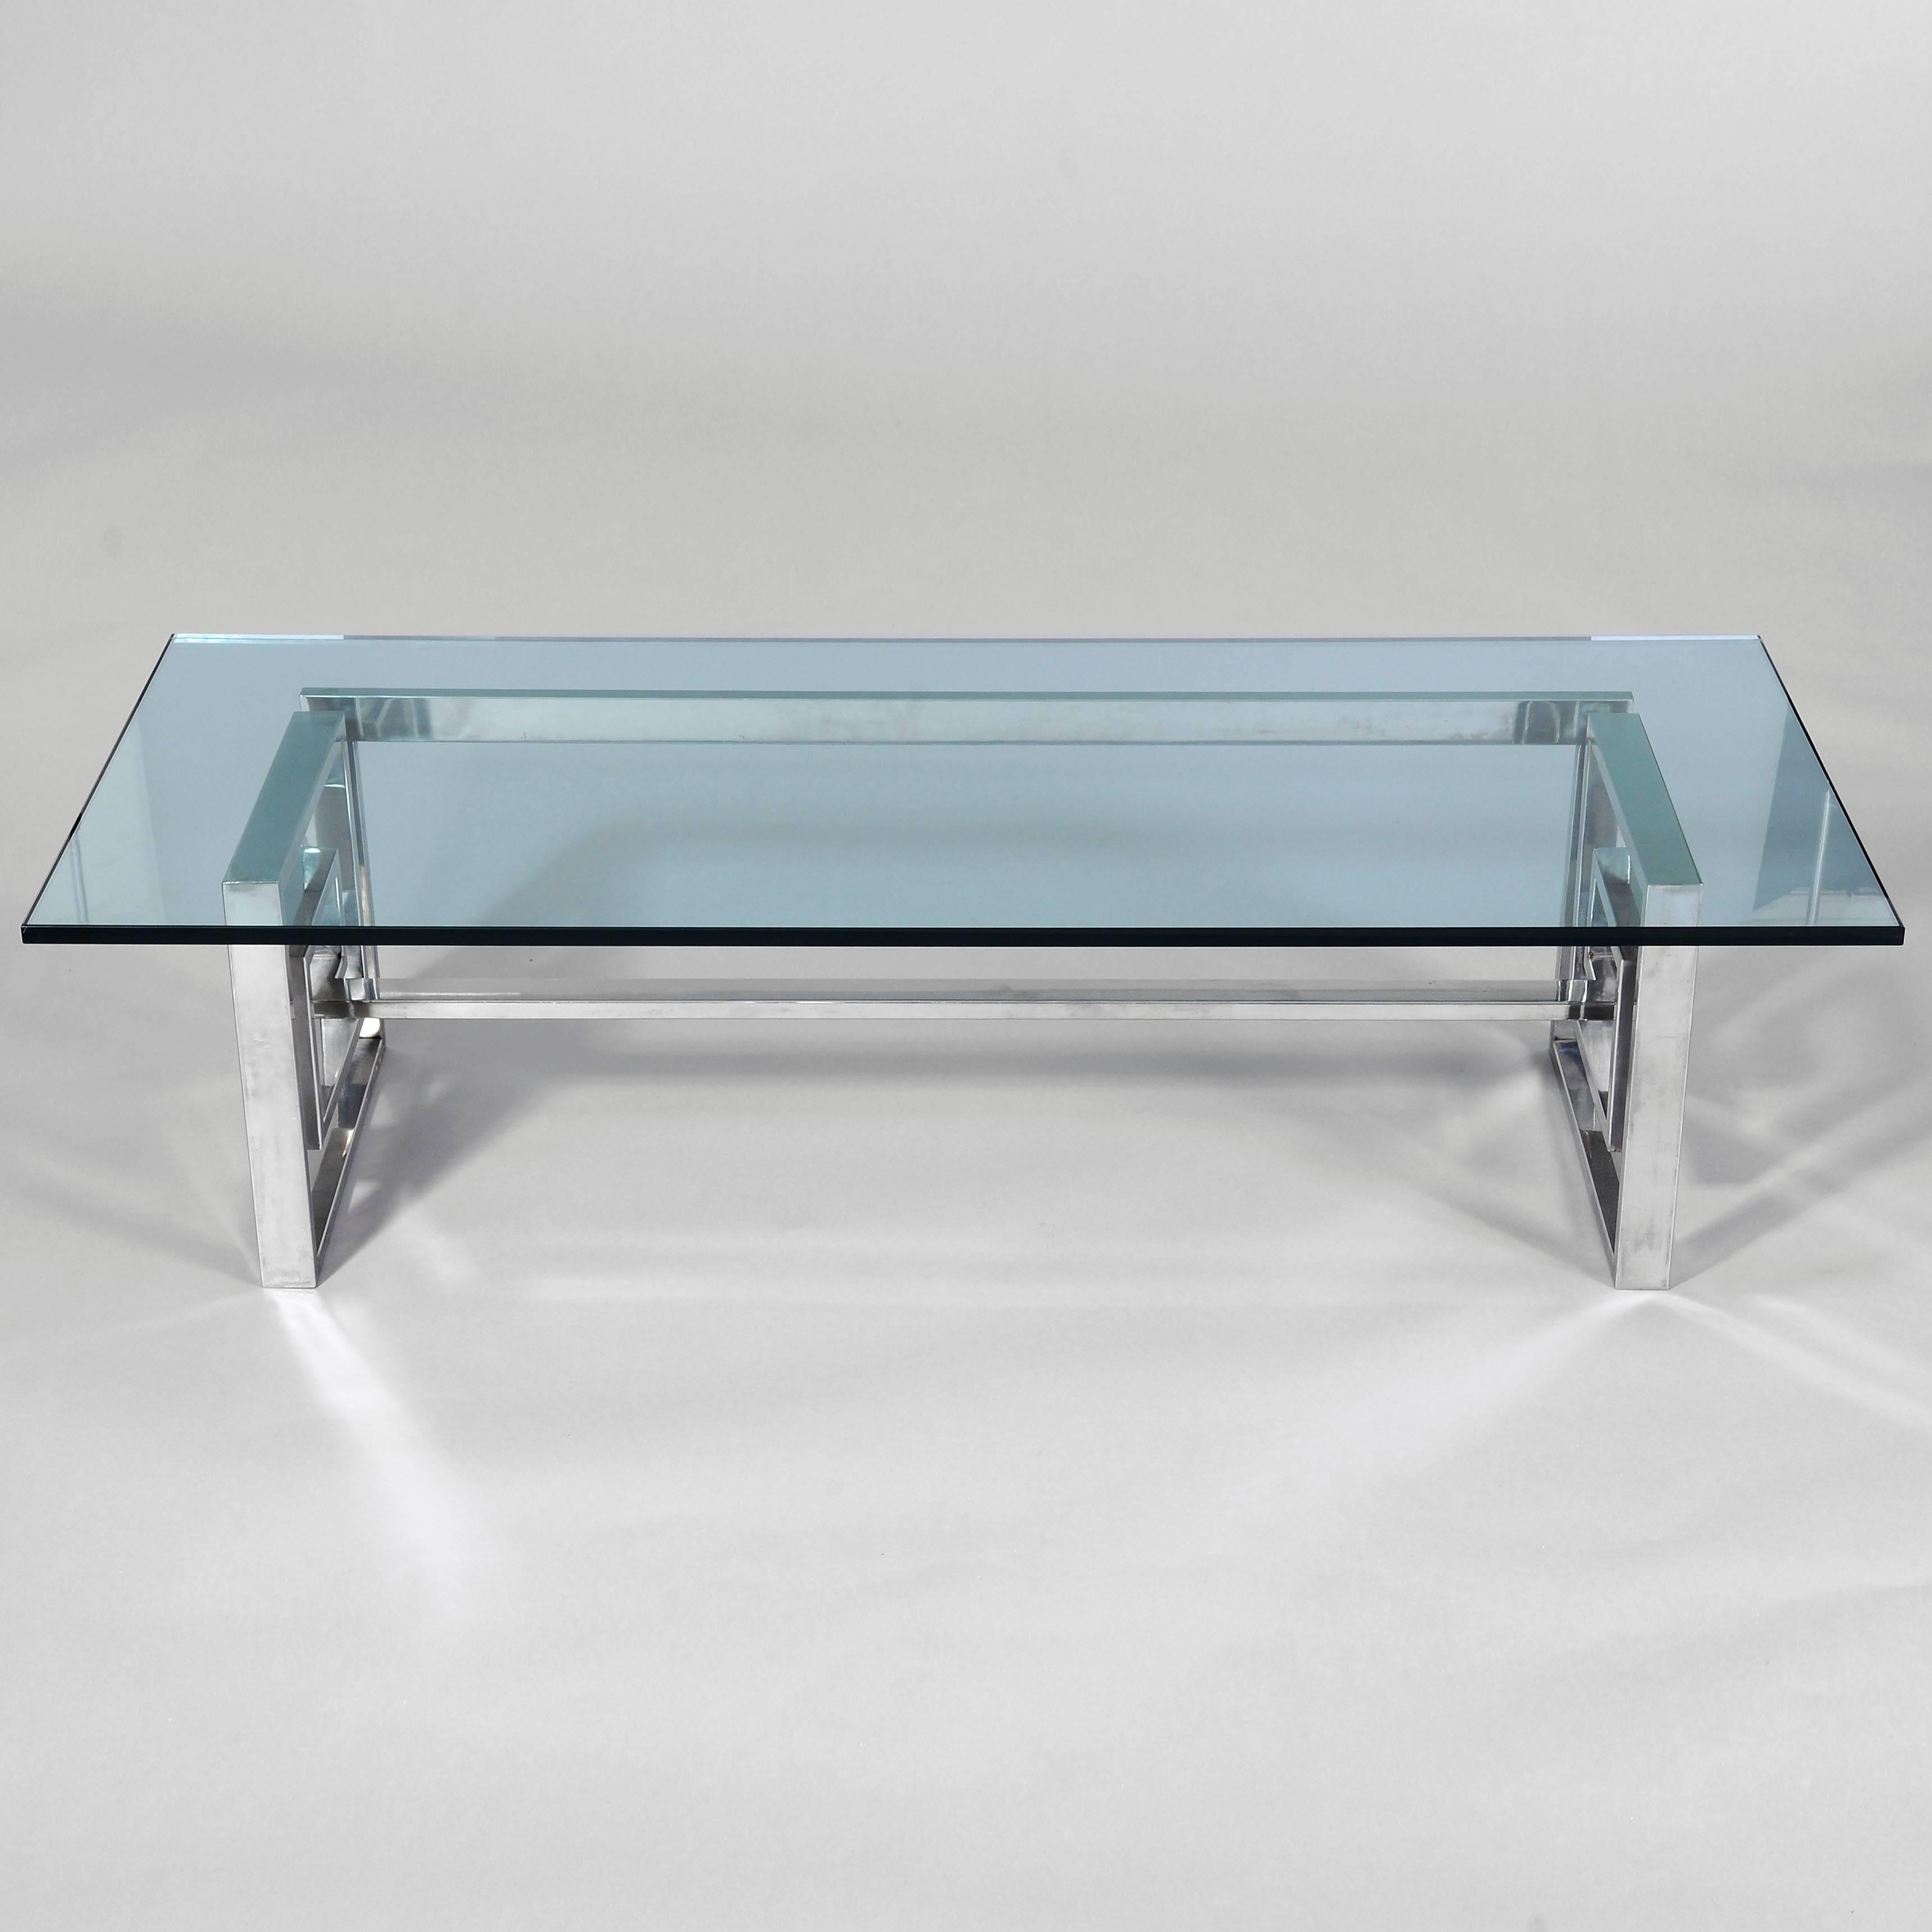 Ein glamouröser Tisch aus Stahl und Glas. Der Stahlsockel, der zu einem durchgehenden Band geformt ist, trägt eine klobige, massive 20 mm (ca. 3/4 Zoll) Glasplatte. Der Sockel ist mit der Marke 